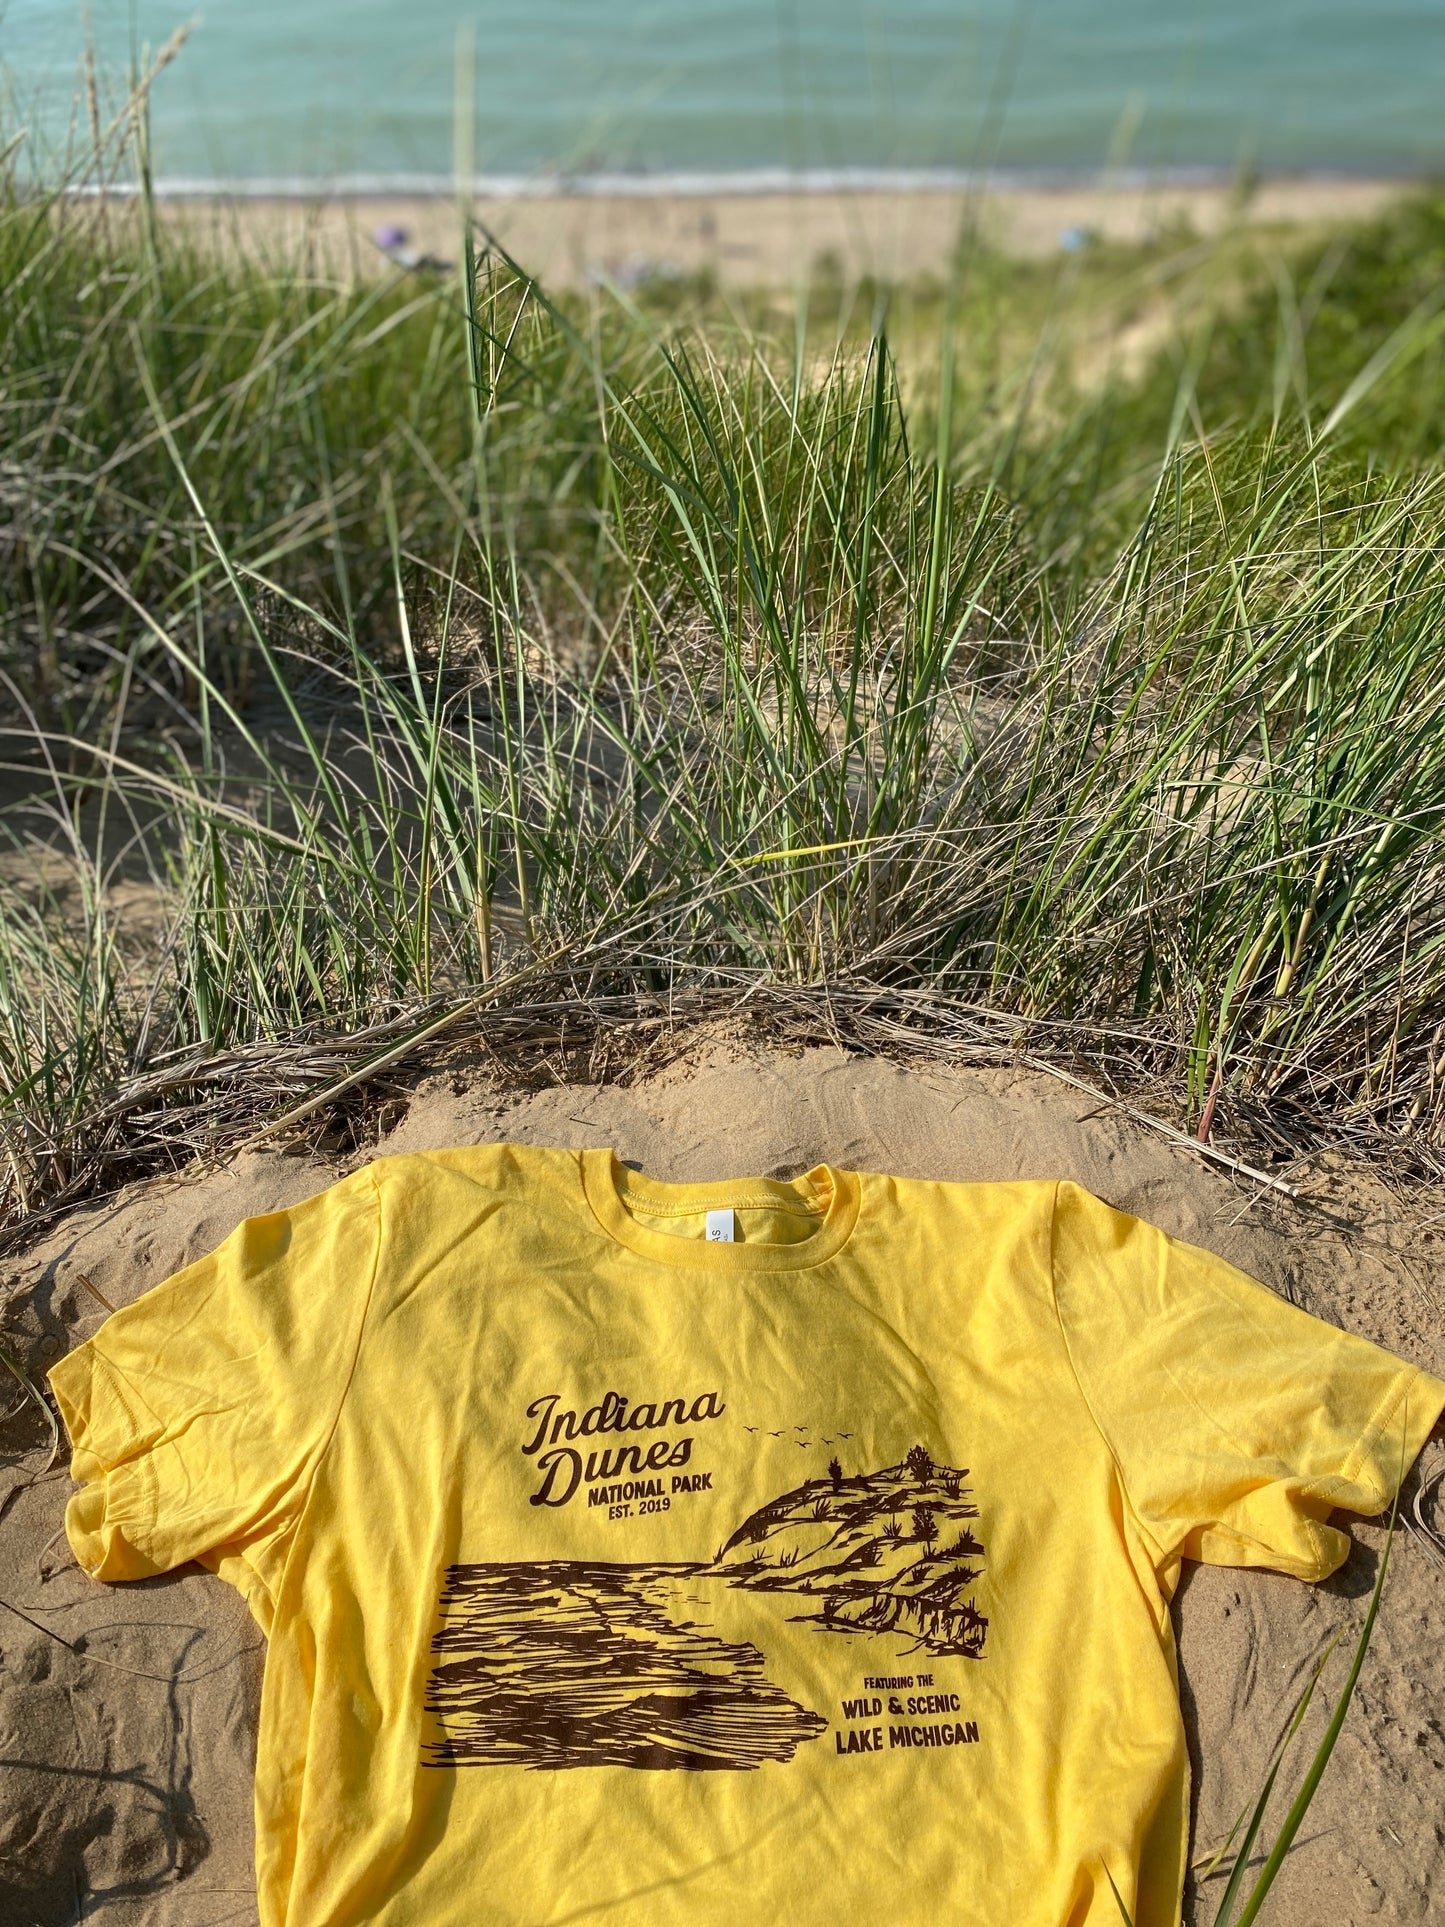 indiana dunes national park t-shirt yellow